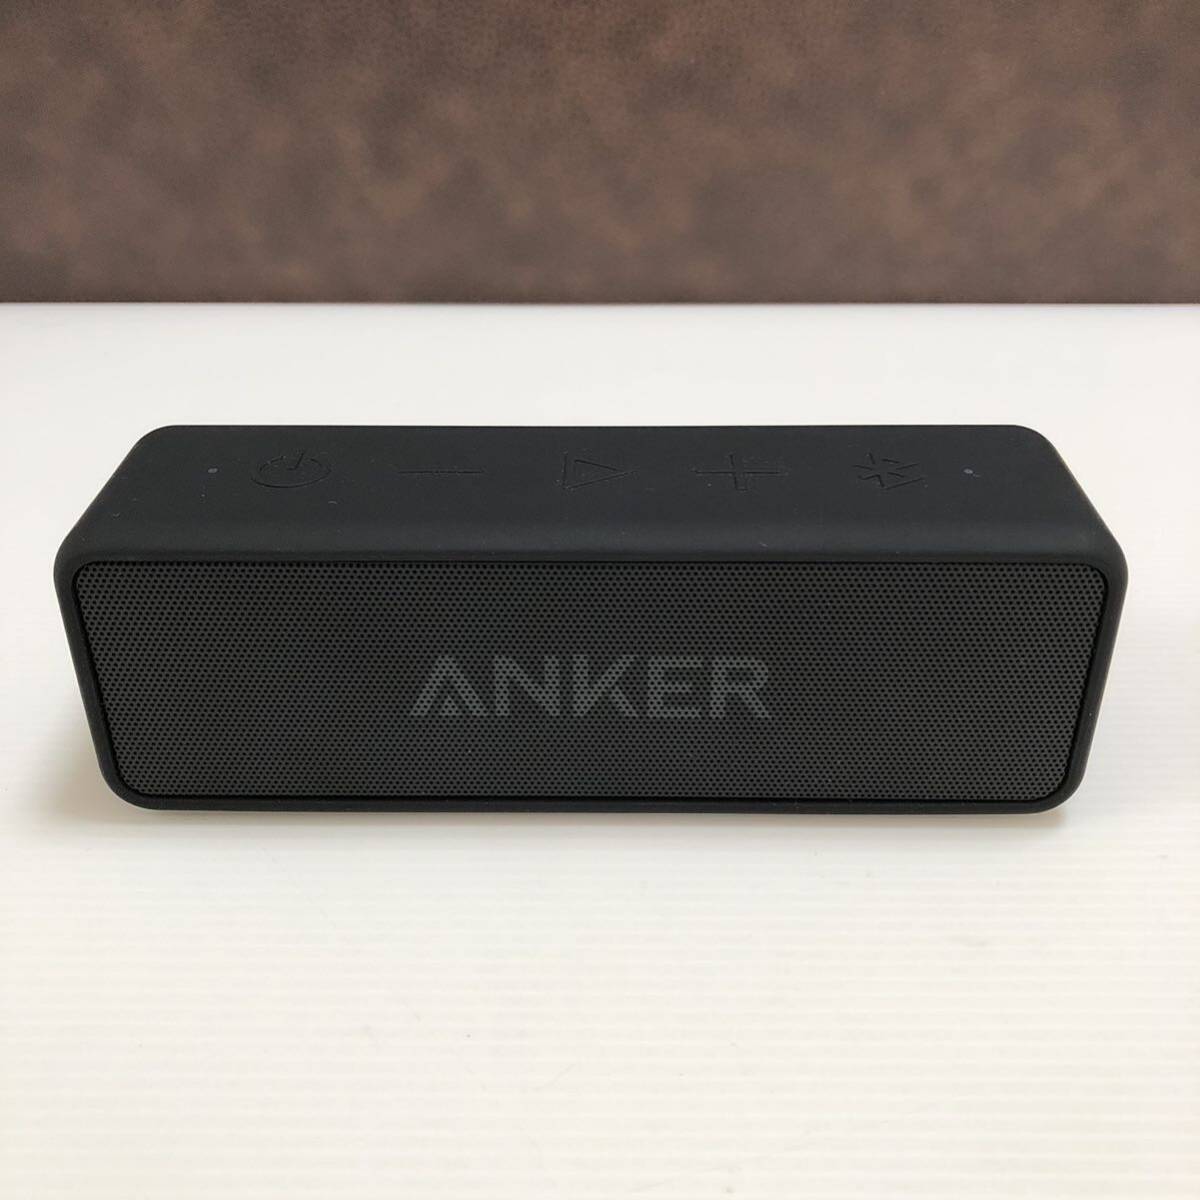 m246-0054-11 Anker アンカー Bluetooth ワイヤレス ポータブル スピーカー SoundCore2 サウンドコア A3105 ブラック 本体のみの画像2